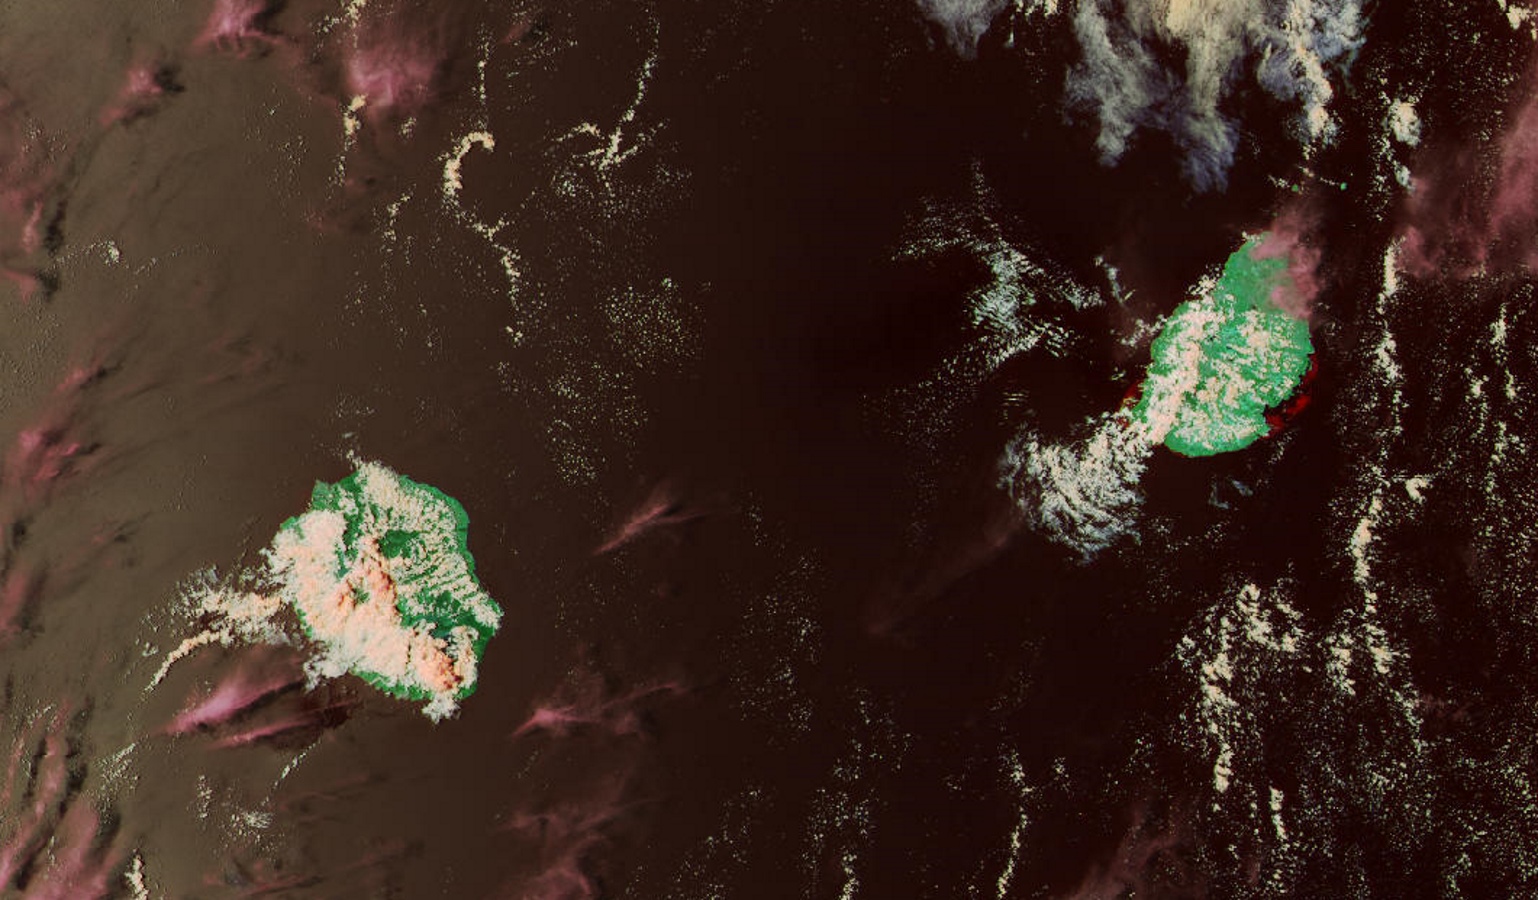 NPP à 13h54 montre de beaux développements convectifs localement sur la Réunion mais seule la région de la Plaine des Cafres sera douchée. Notez le contraste entre la moitié sud ouest et le nord et l'est.